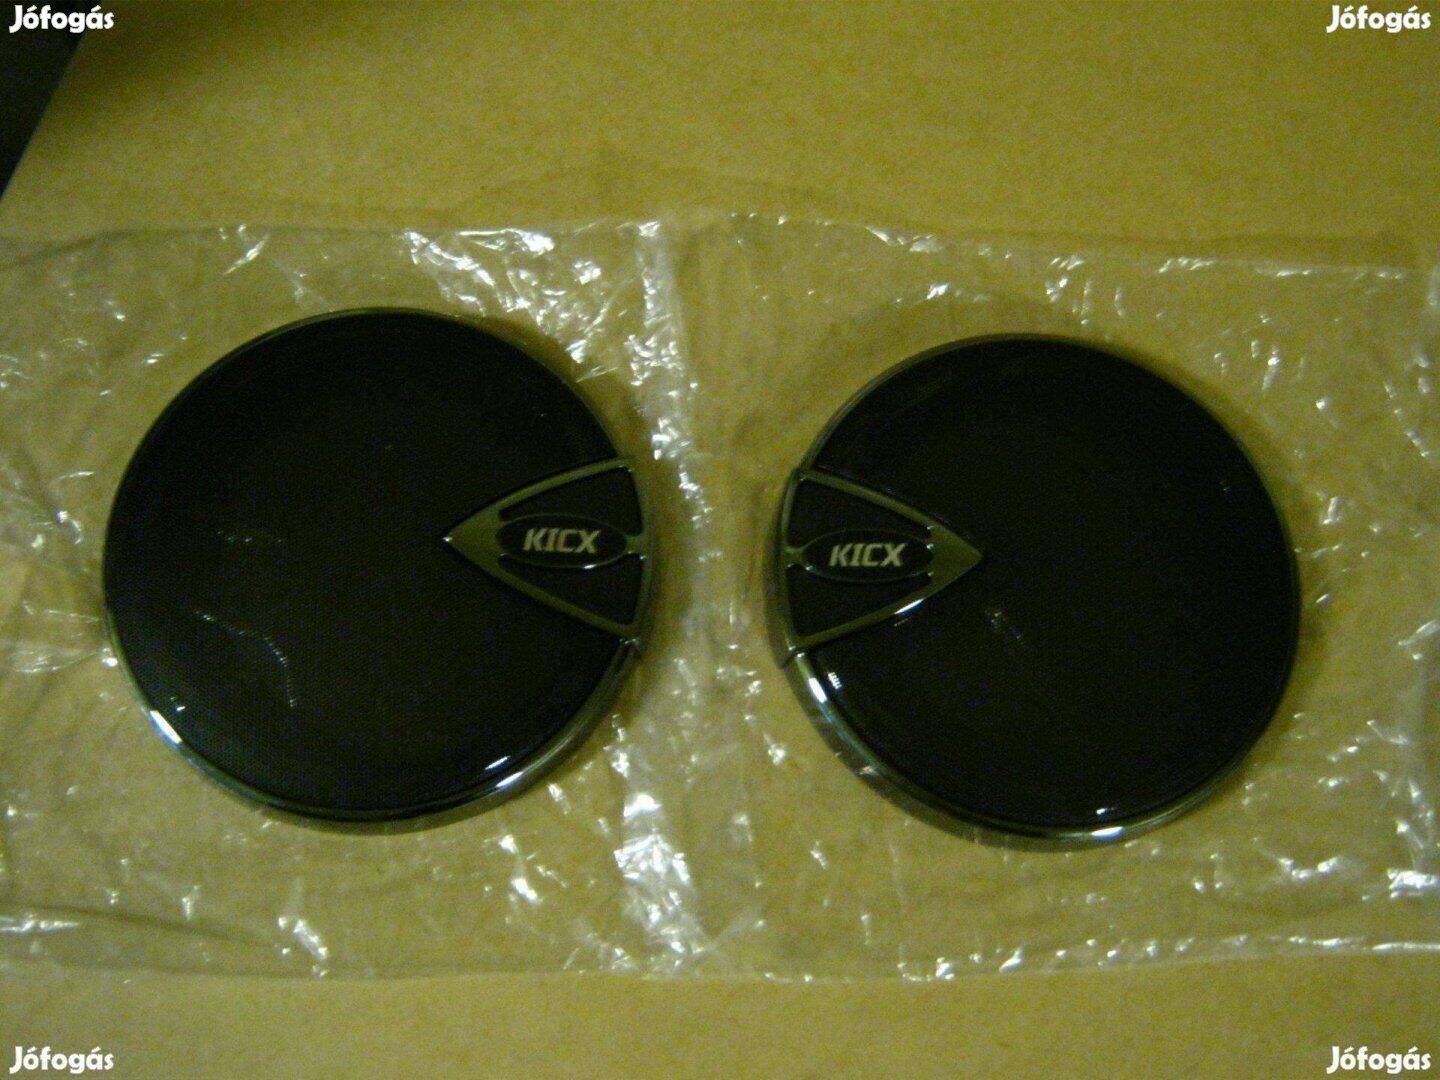 Kicx ICQ-652 Autó hangszoró Díszrácsa eladó, Új!